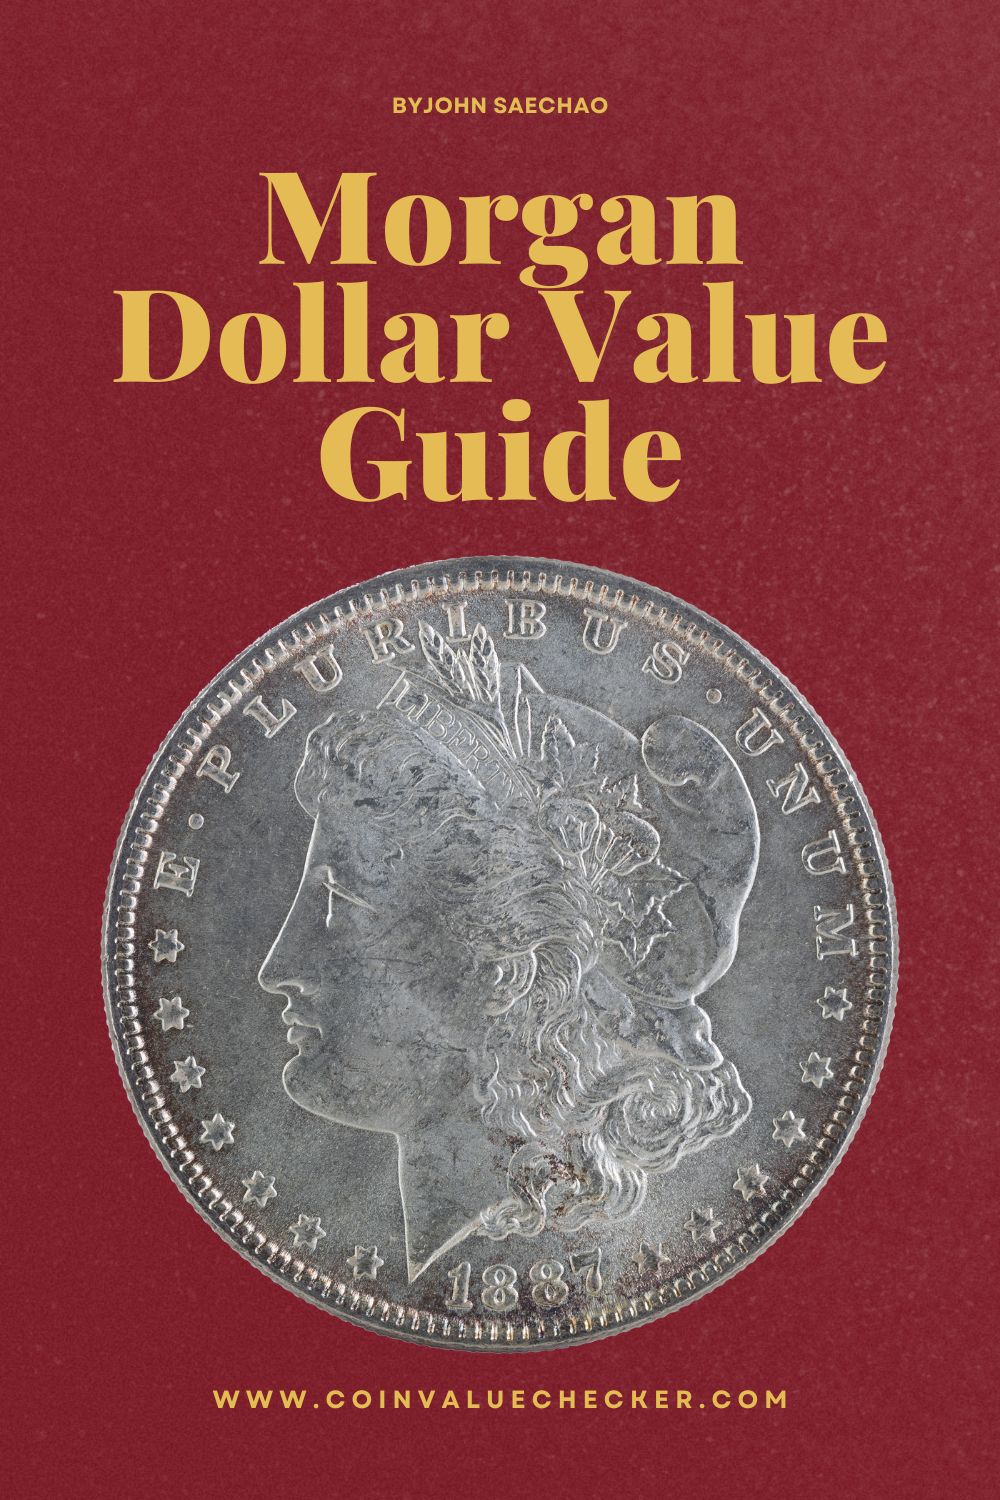 Morgan Dollar Value Guide